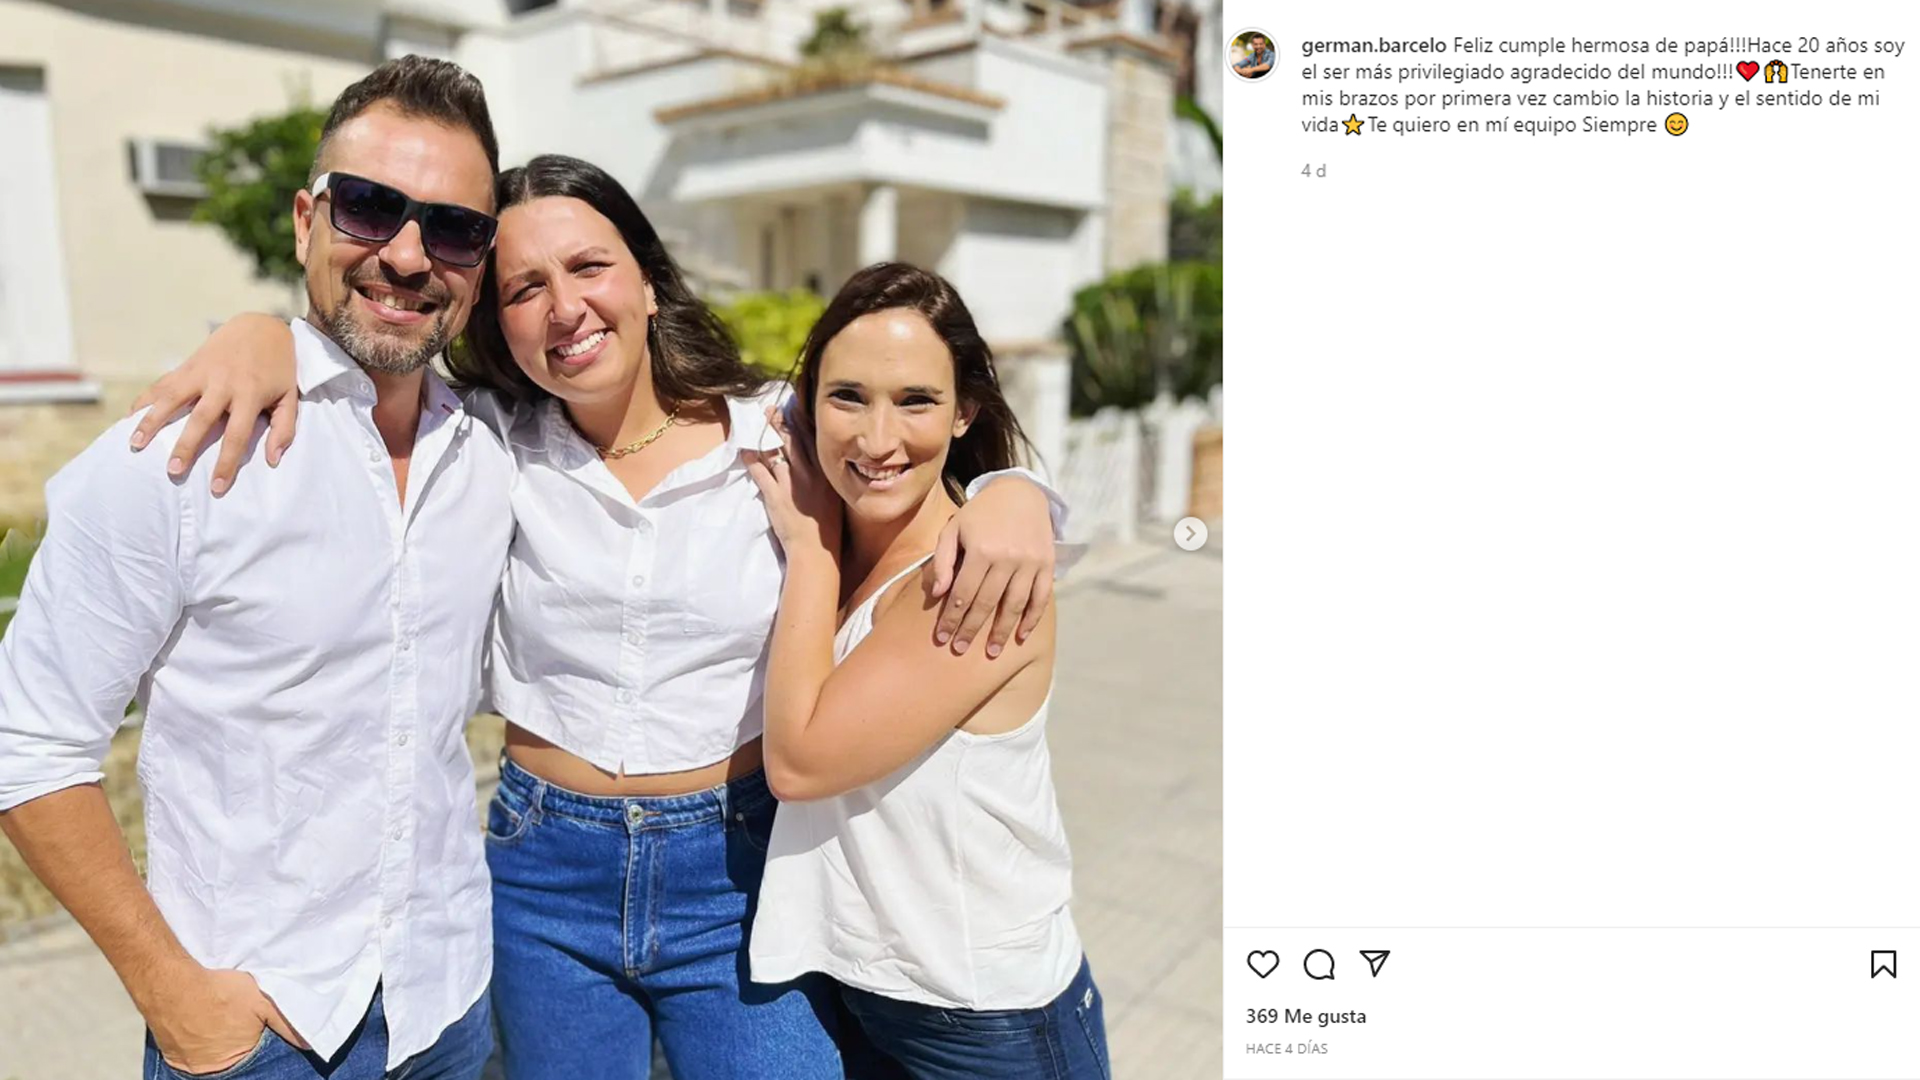 Germán Barceló incluyó en el posteo una foto con su actual pareja, Mavi Cerain, y su hija Isabella